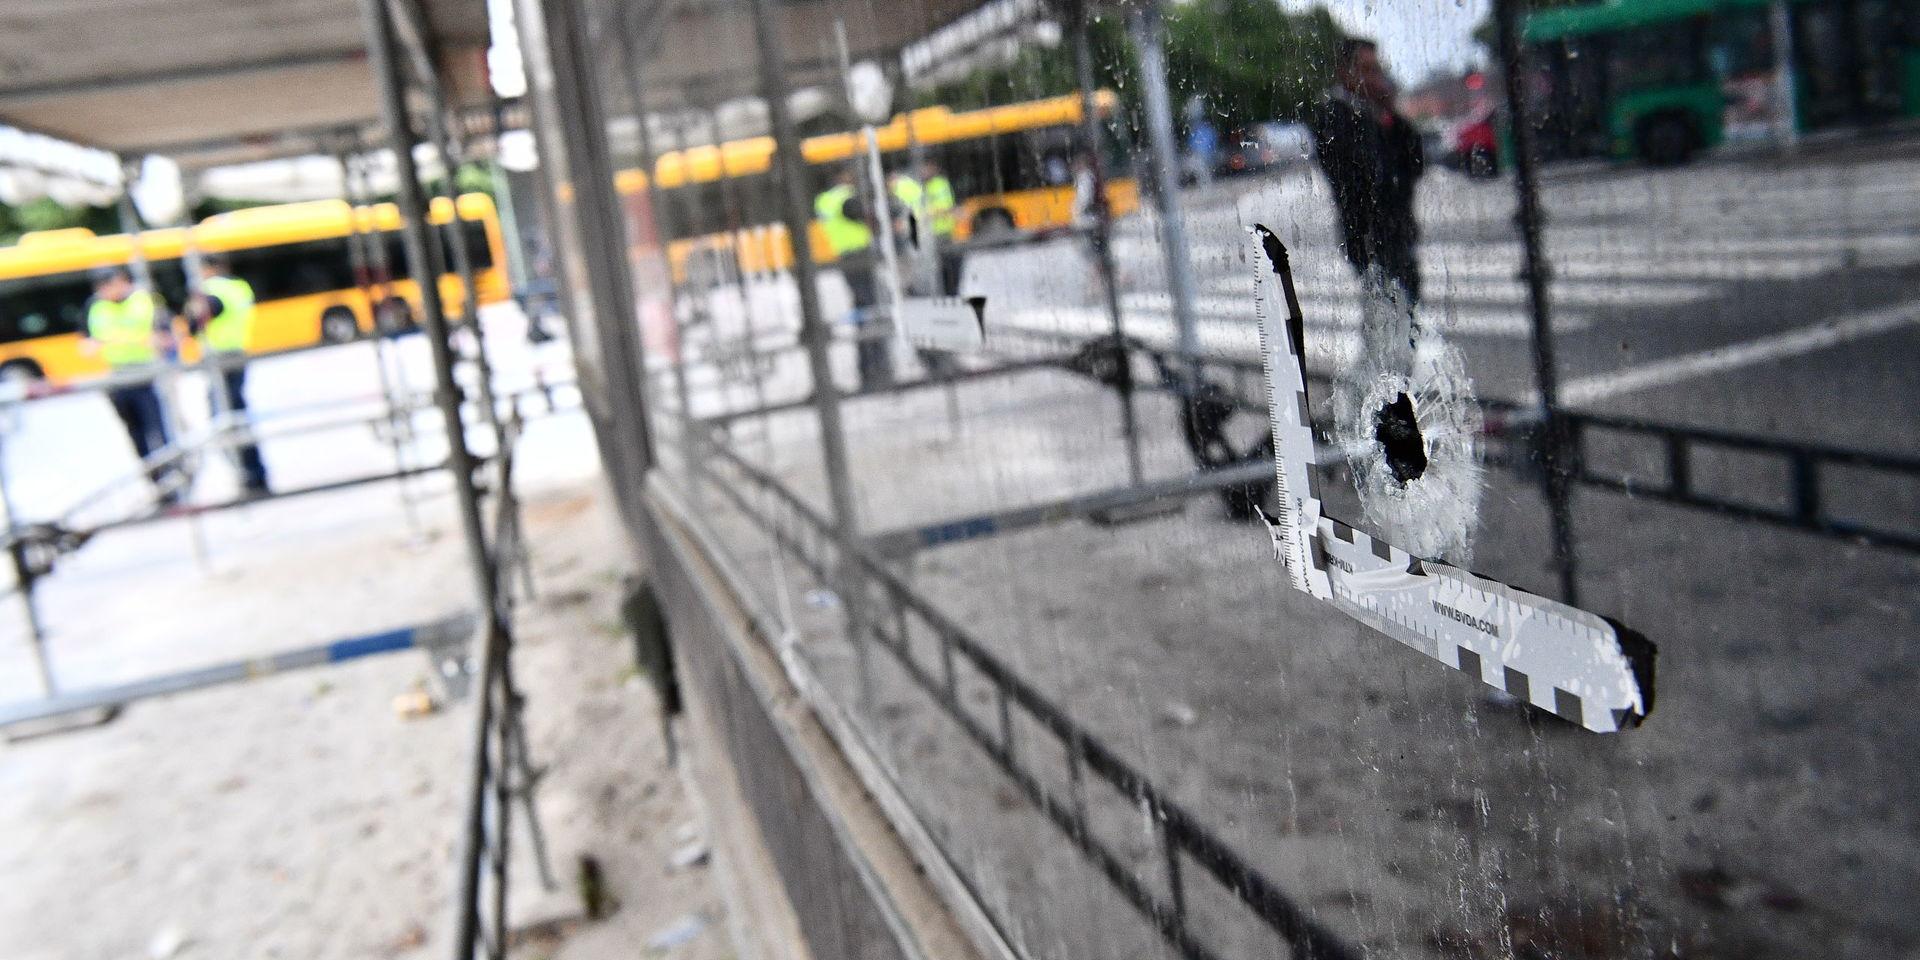 De senaste veckorna har Malmö drabbats hårt av skjutningar och fem människor har dödats.

